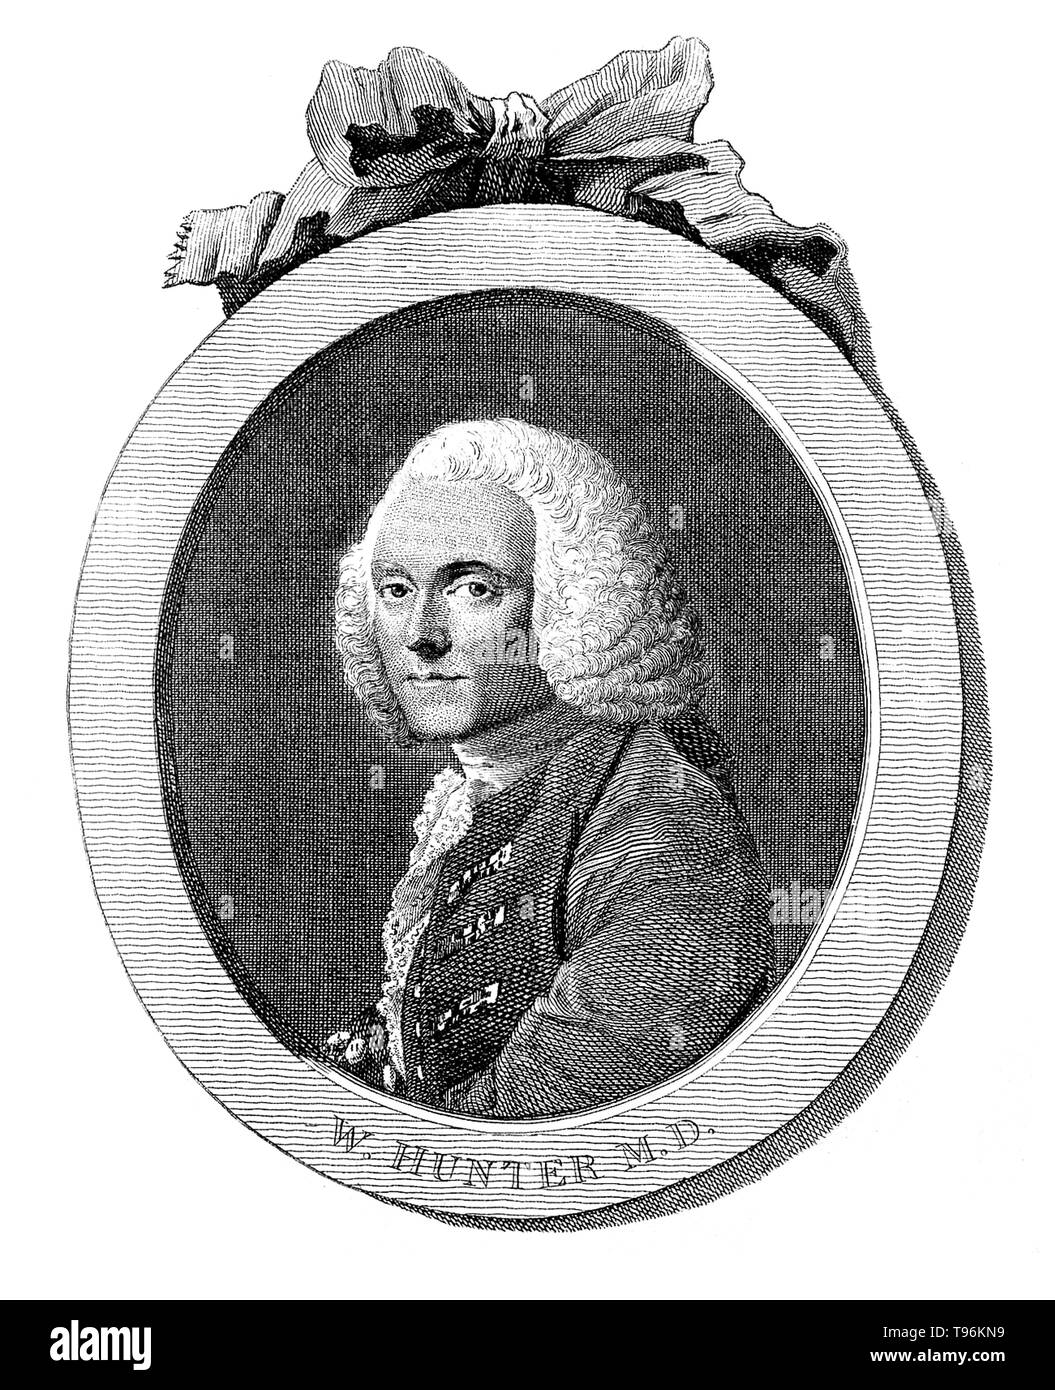 William Hunter (23 mai 1718 - 30 mars 1783) était un médecin et anatomiste écossais. Hunter est devenu élève résident à William Smellie et il a été formé à l'anatomie à la St George's Hospital, Londres, spécialisée en obstétrique. Ses manières courtoises et sensé jugement lui ont permis d'avancer jusqu'à ce qu'il devint le premier consultant en obstétrique de Londres. D'orthopédistes il est célèbre pour ses études sur l'os et du cartilage. Banque D'Images